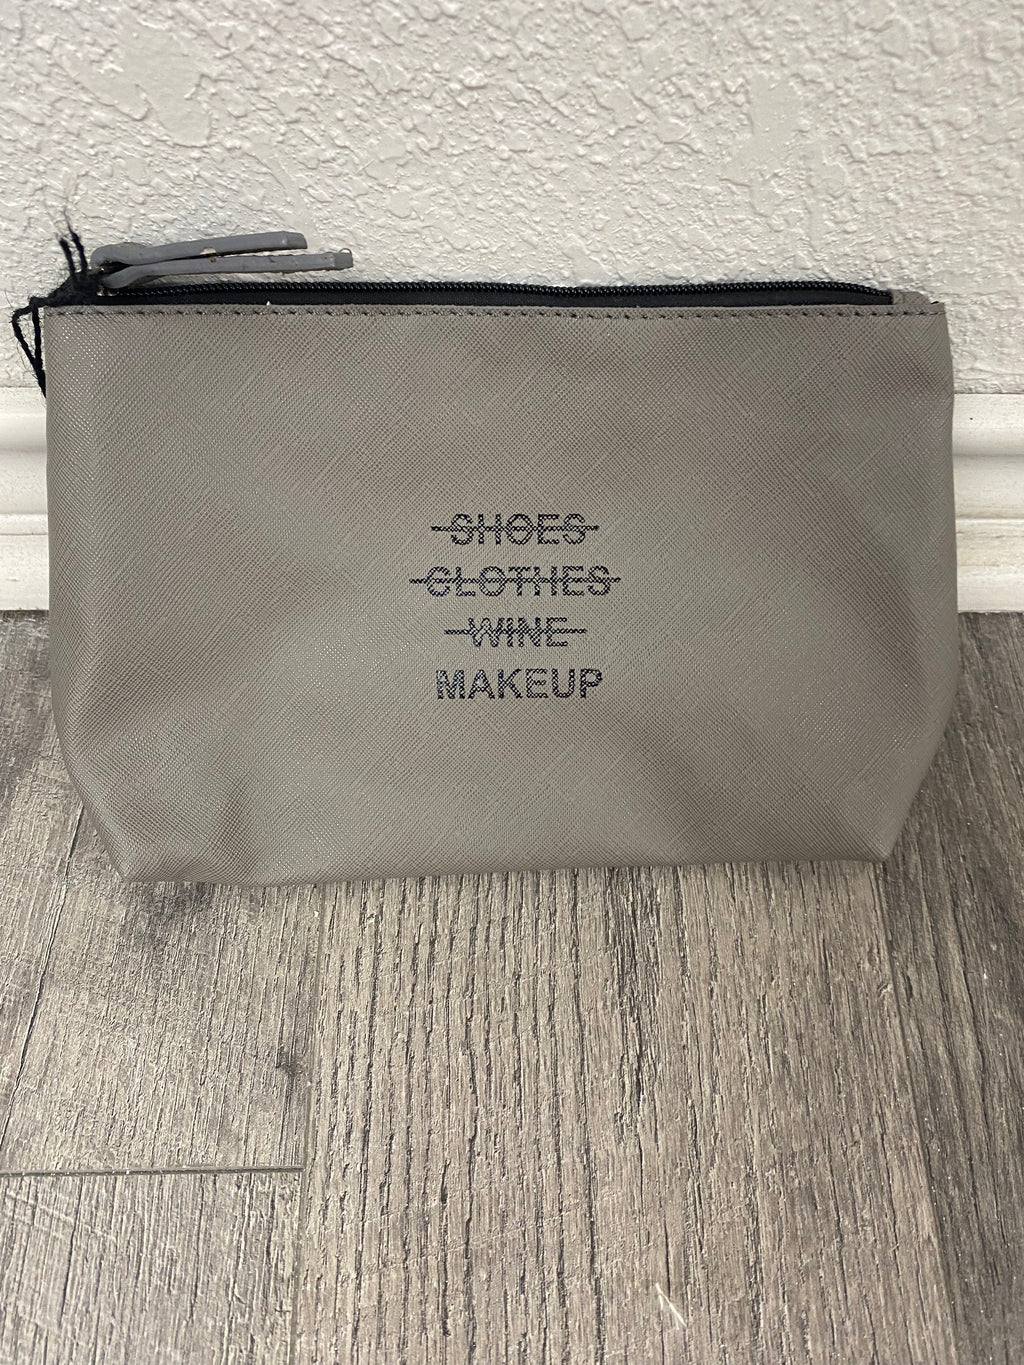 Just The Makeup M'Am Bag